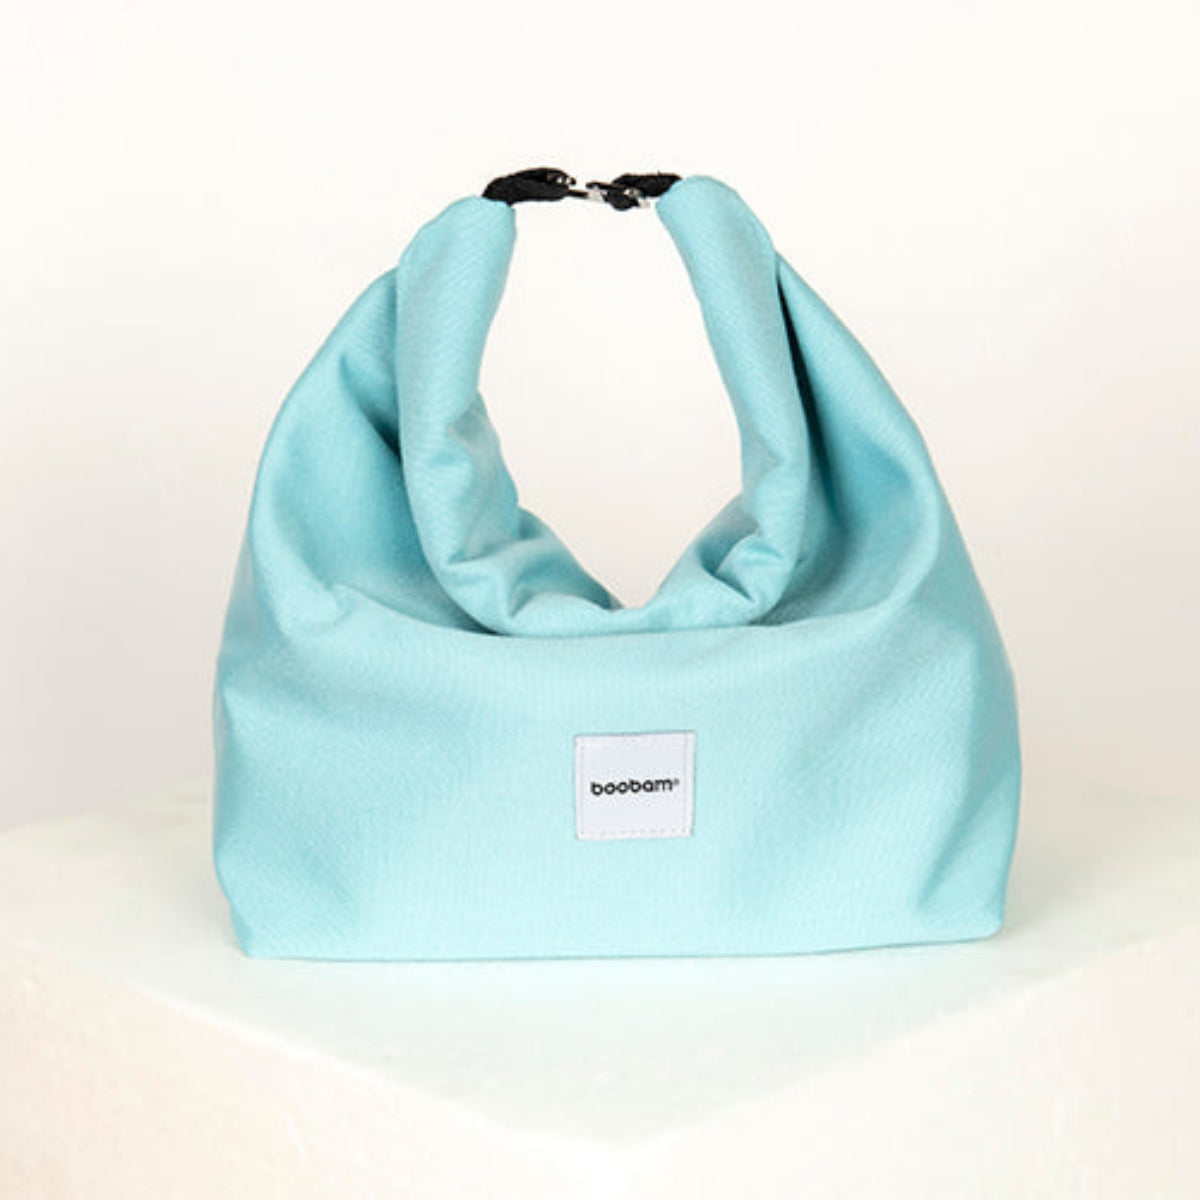 Boobam Bag Lunchbag Ισοθερμική Τσάντα 12lt γαλάζια